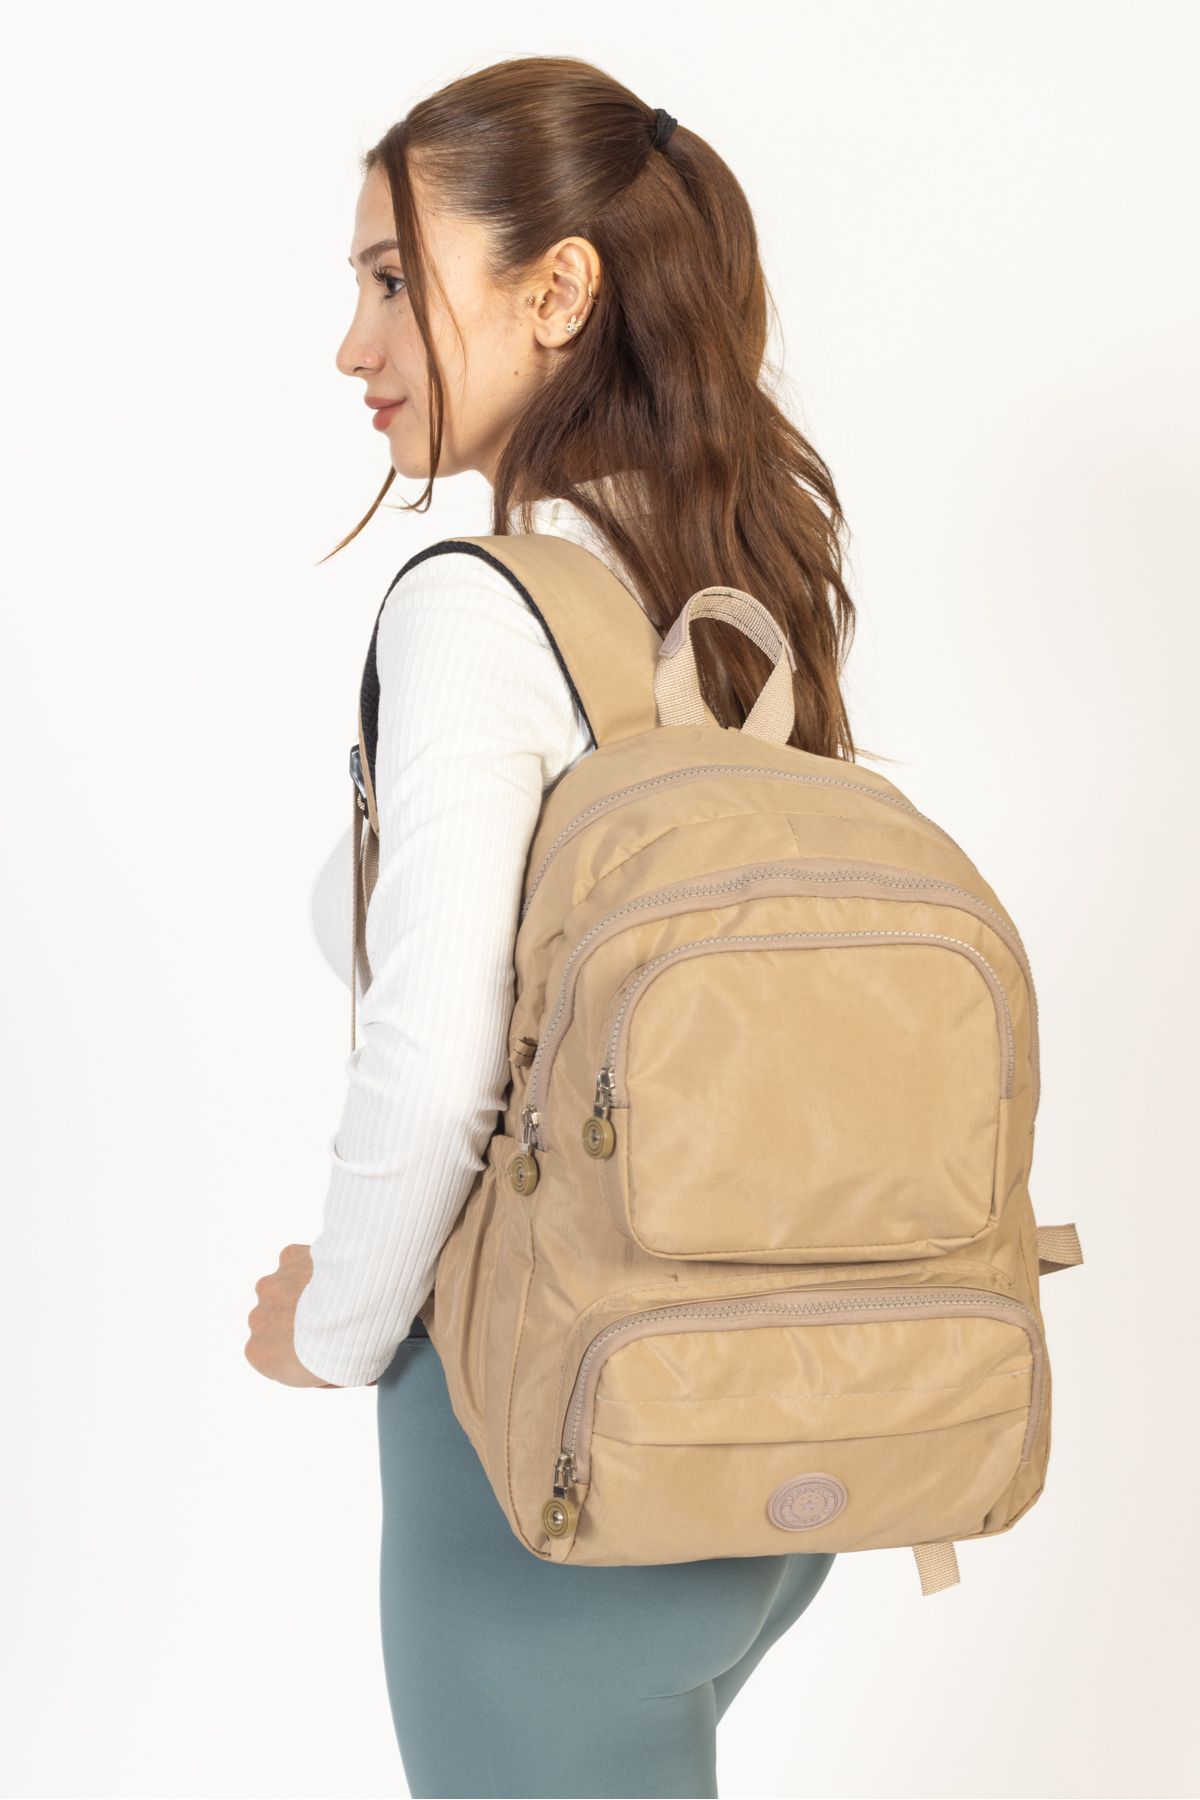 collectionKESH Vizon klinkır sırt çantası okul, laptop ve seyahat çantası su geçirmez kumaş